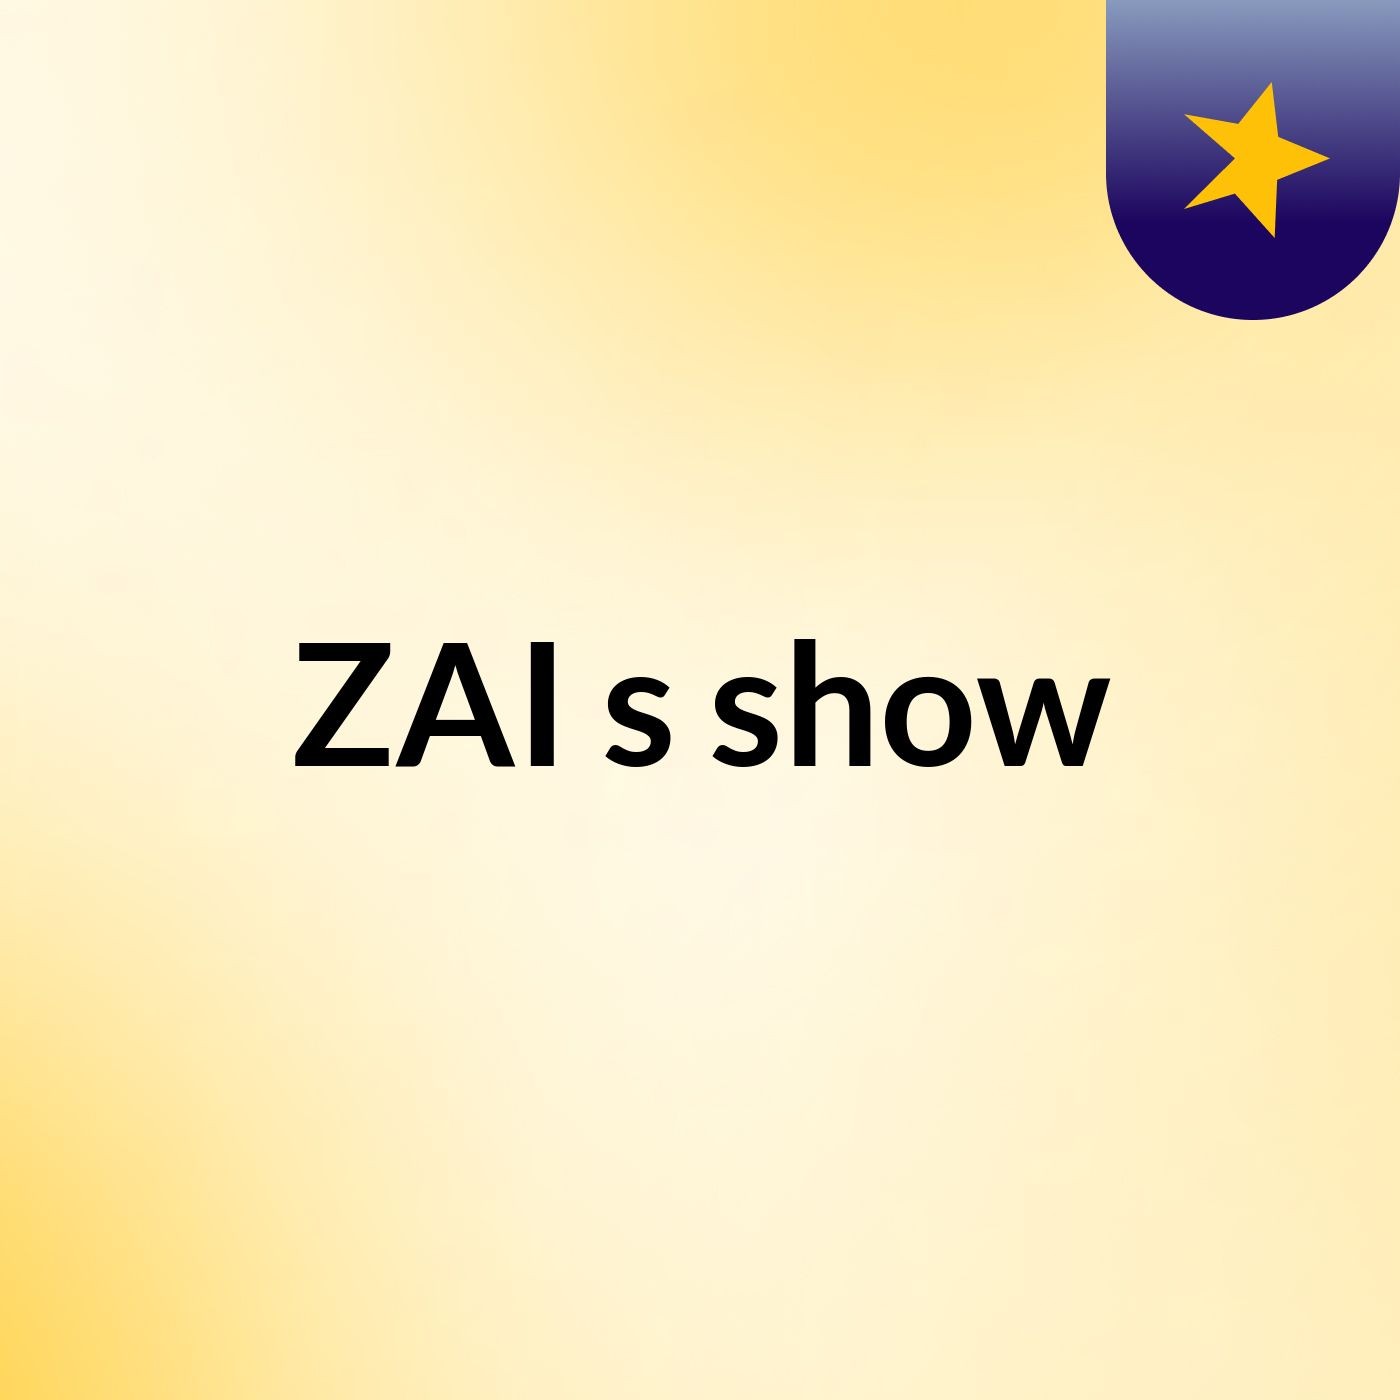 ZAI's show